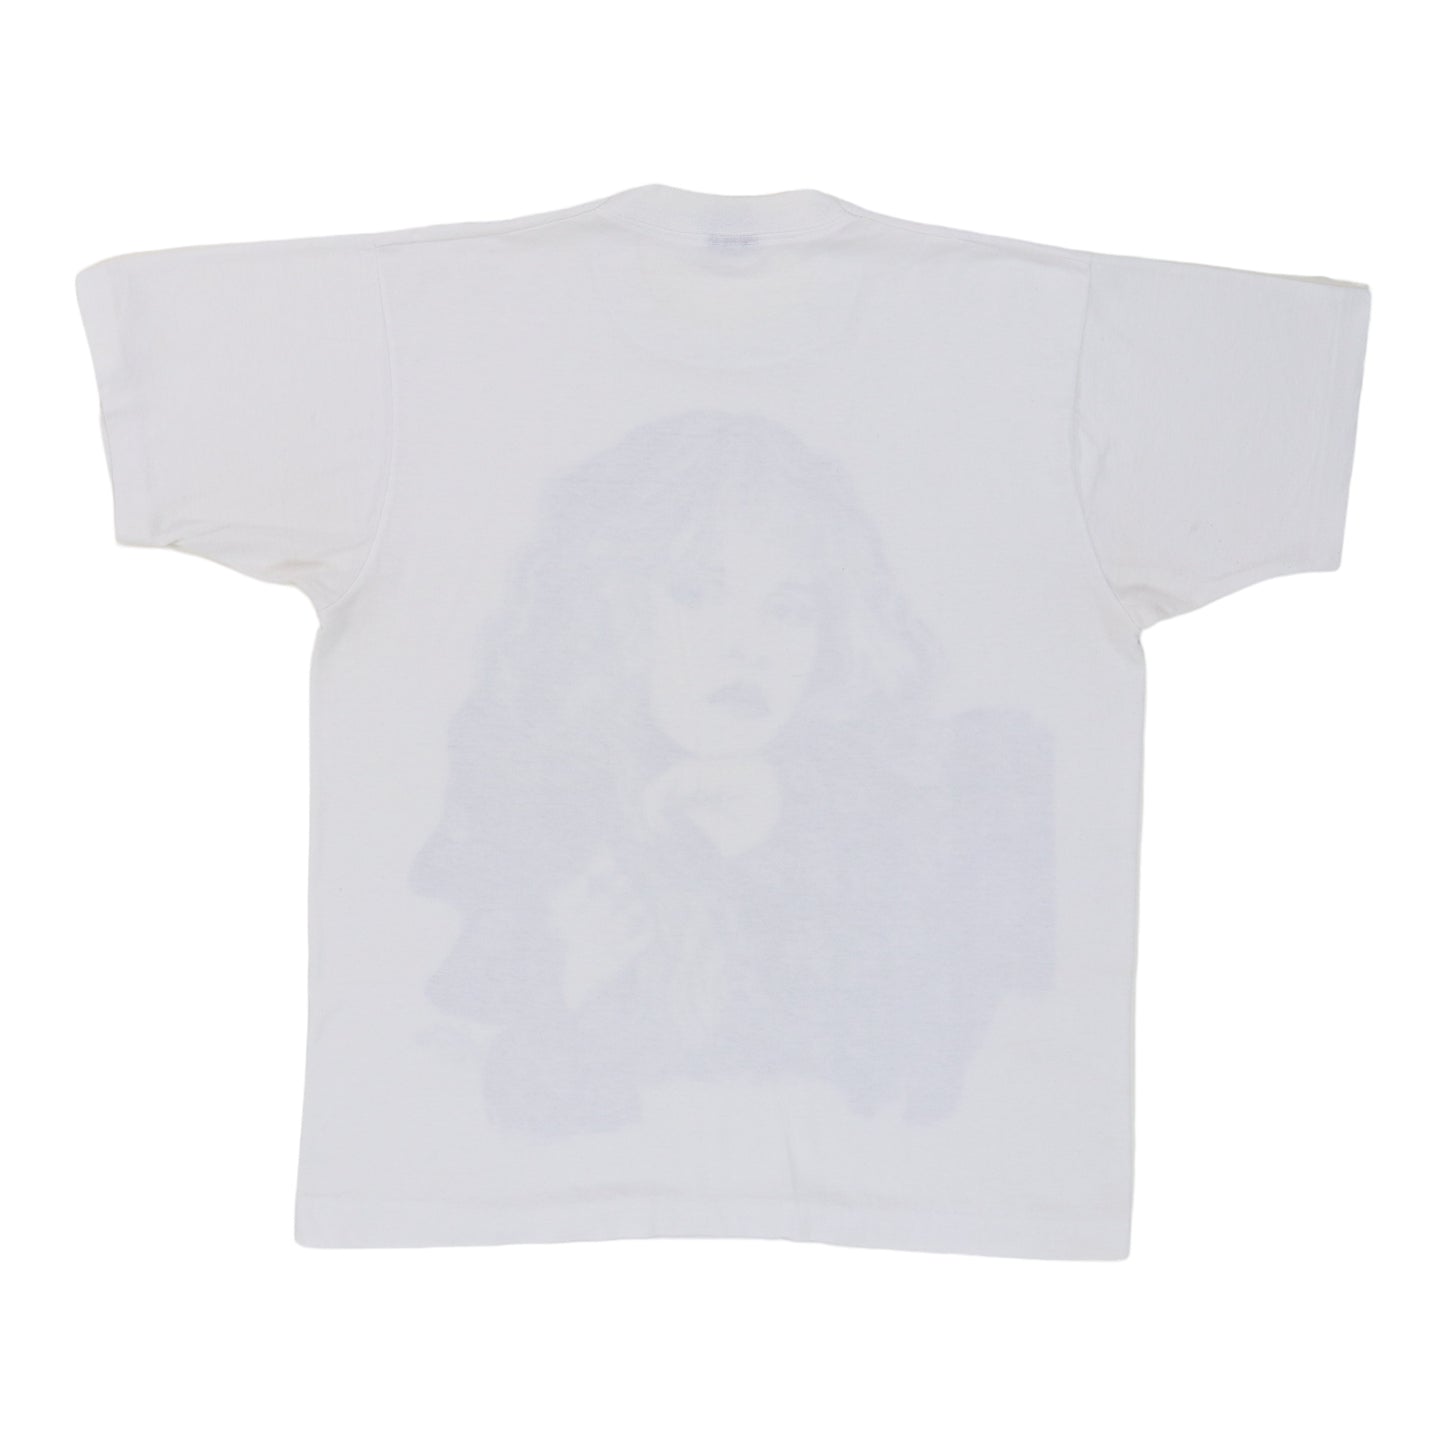 1990 Stevie Nicks Shirt